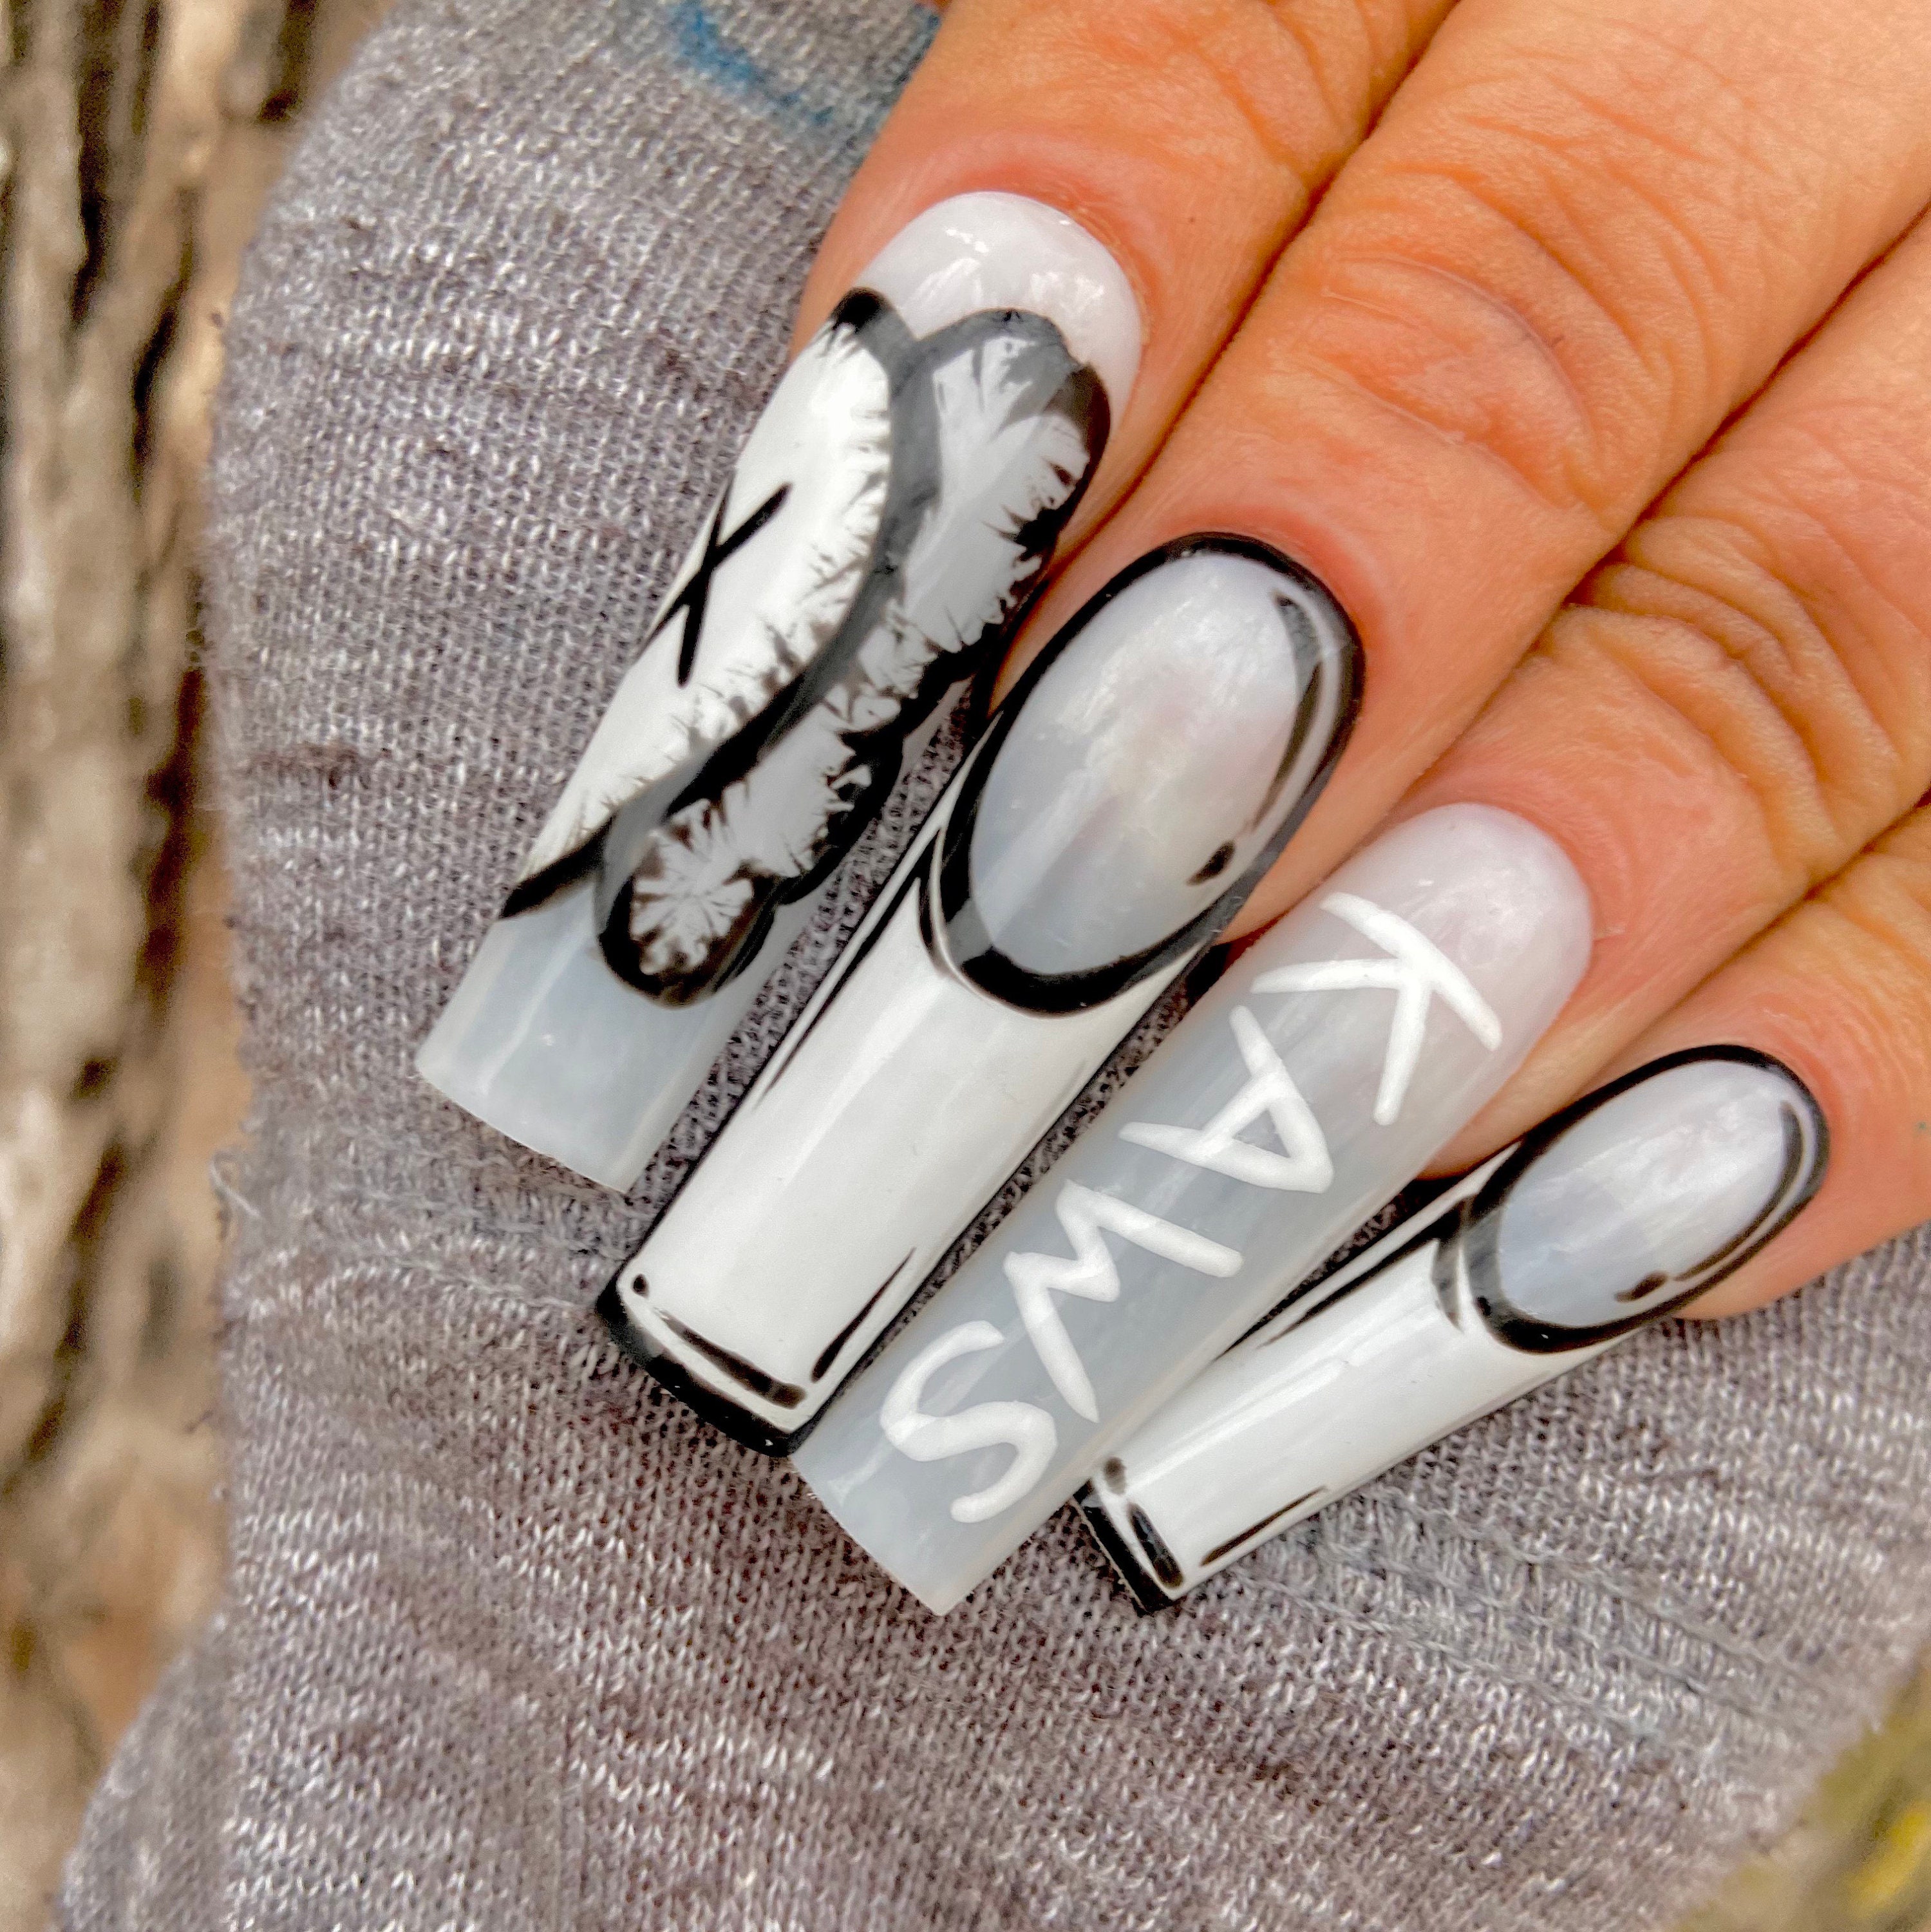 kaws nails  Dope nail designs, Nails, Long acrylic nails